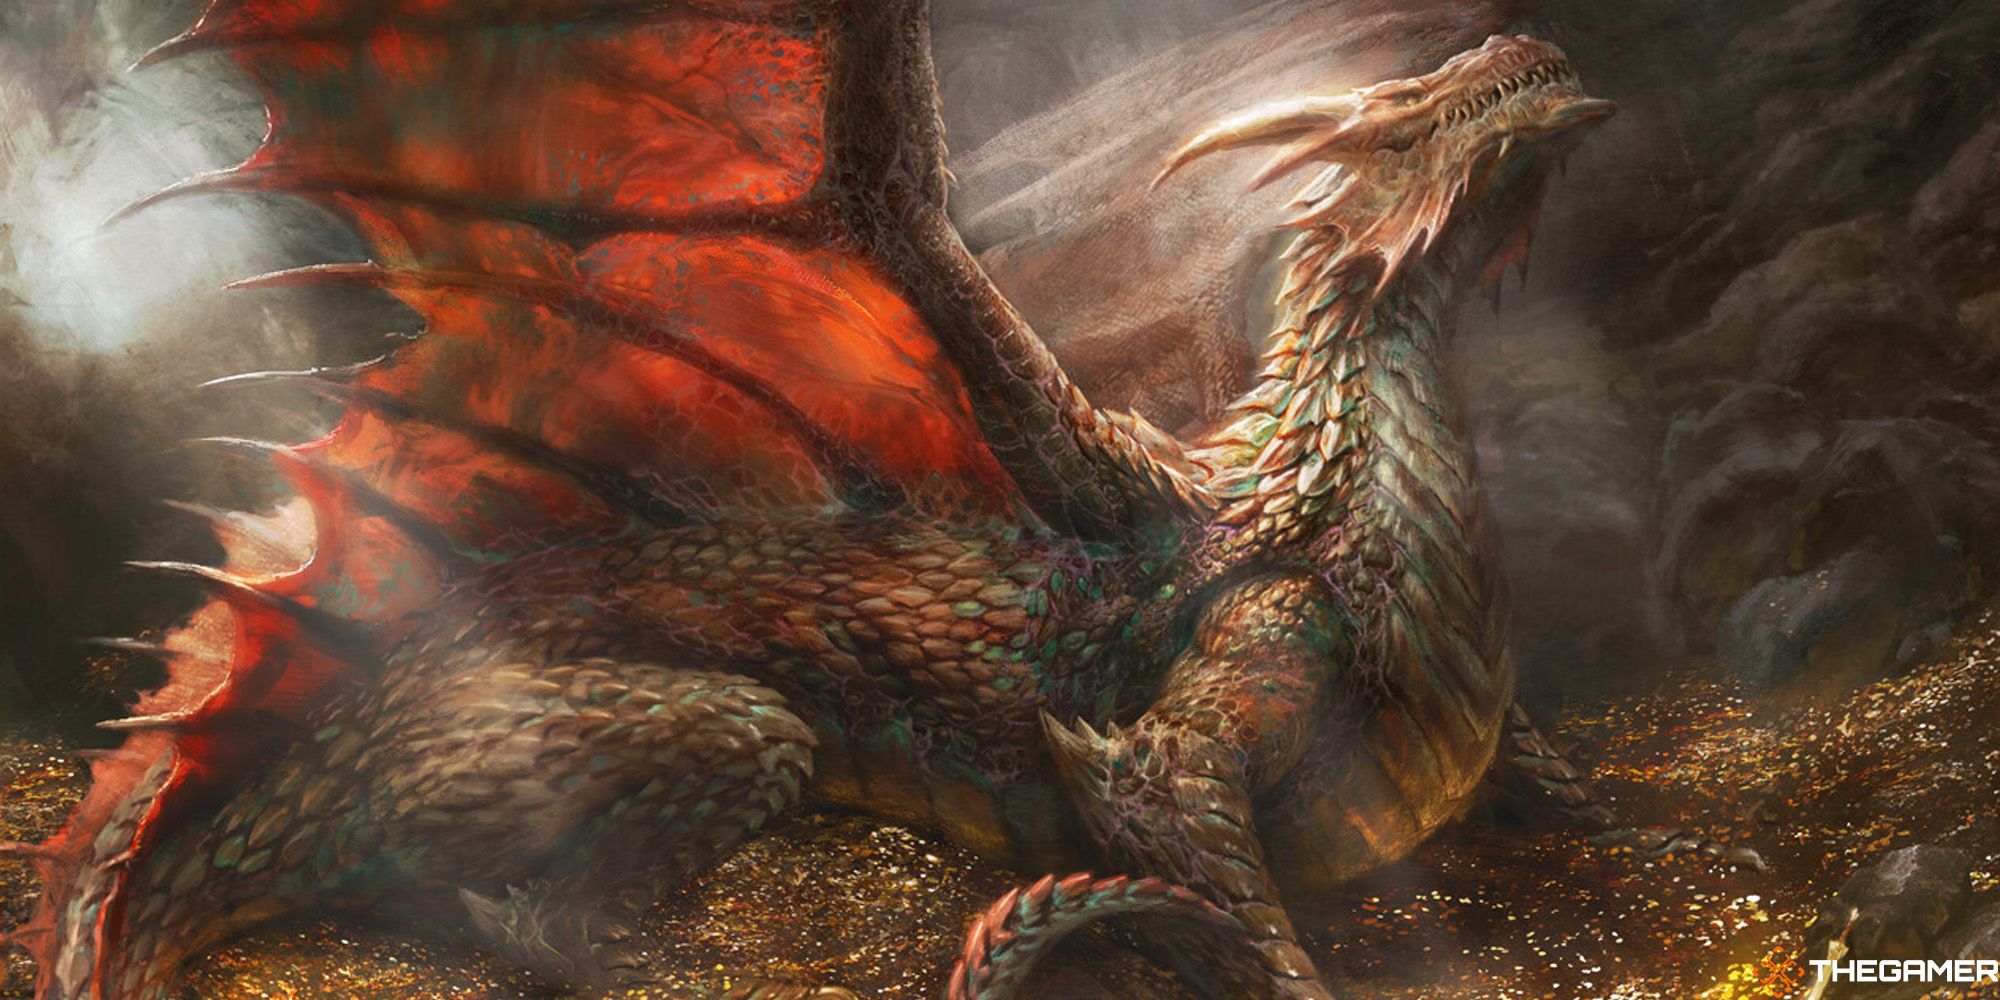 Wrathful Red Dragon [Commander Legends: Battle for Baldur's Gate]